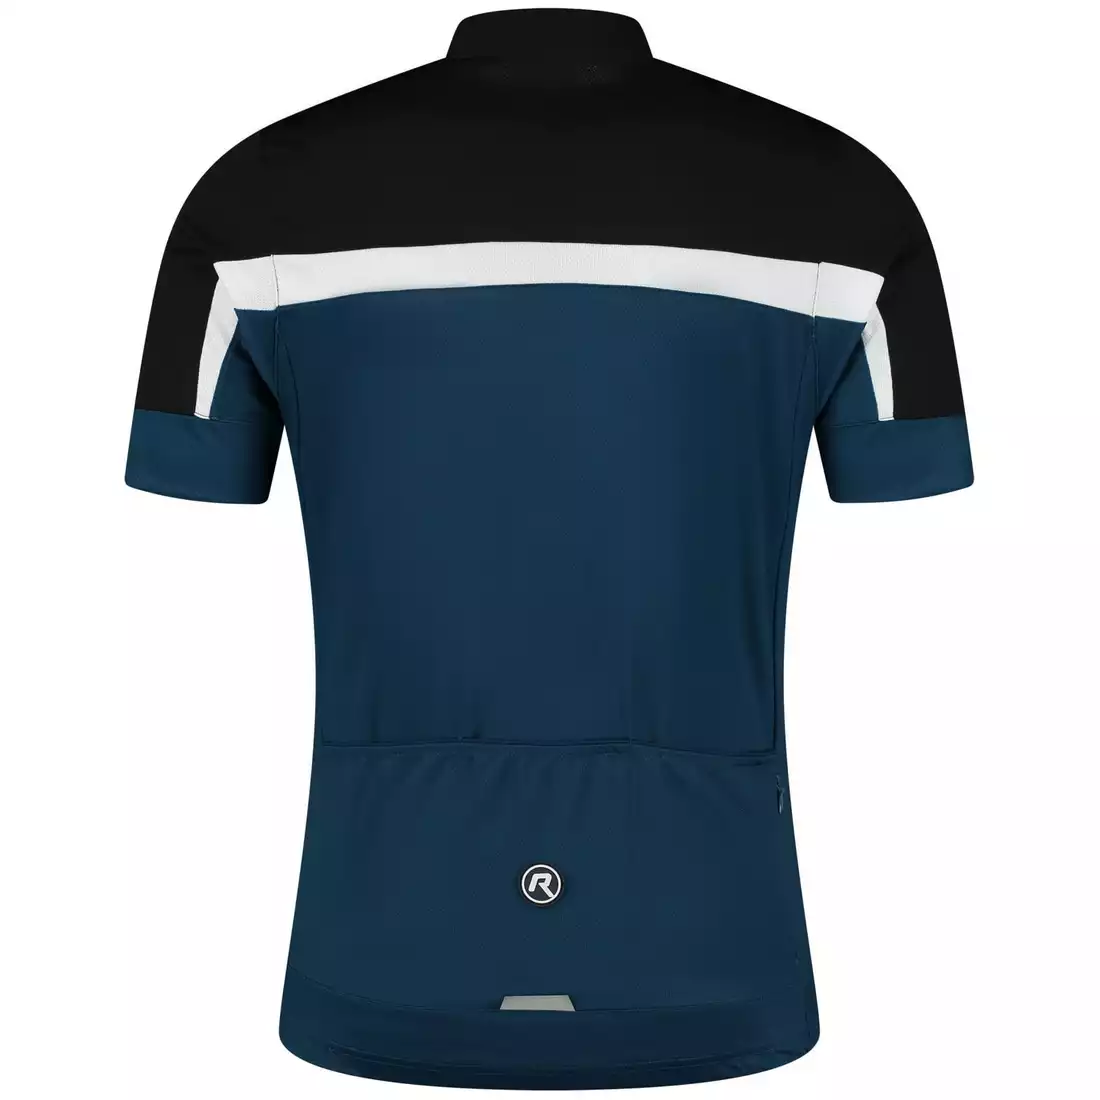 Rogelli COURSE pánsky cyklistický dres, čierna a námornícka modrá